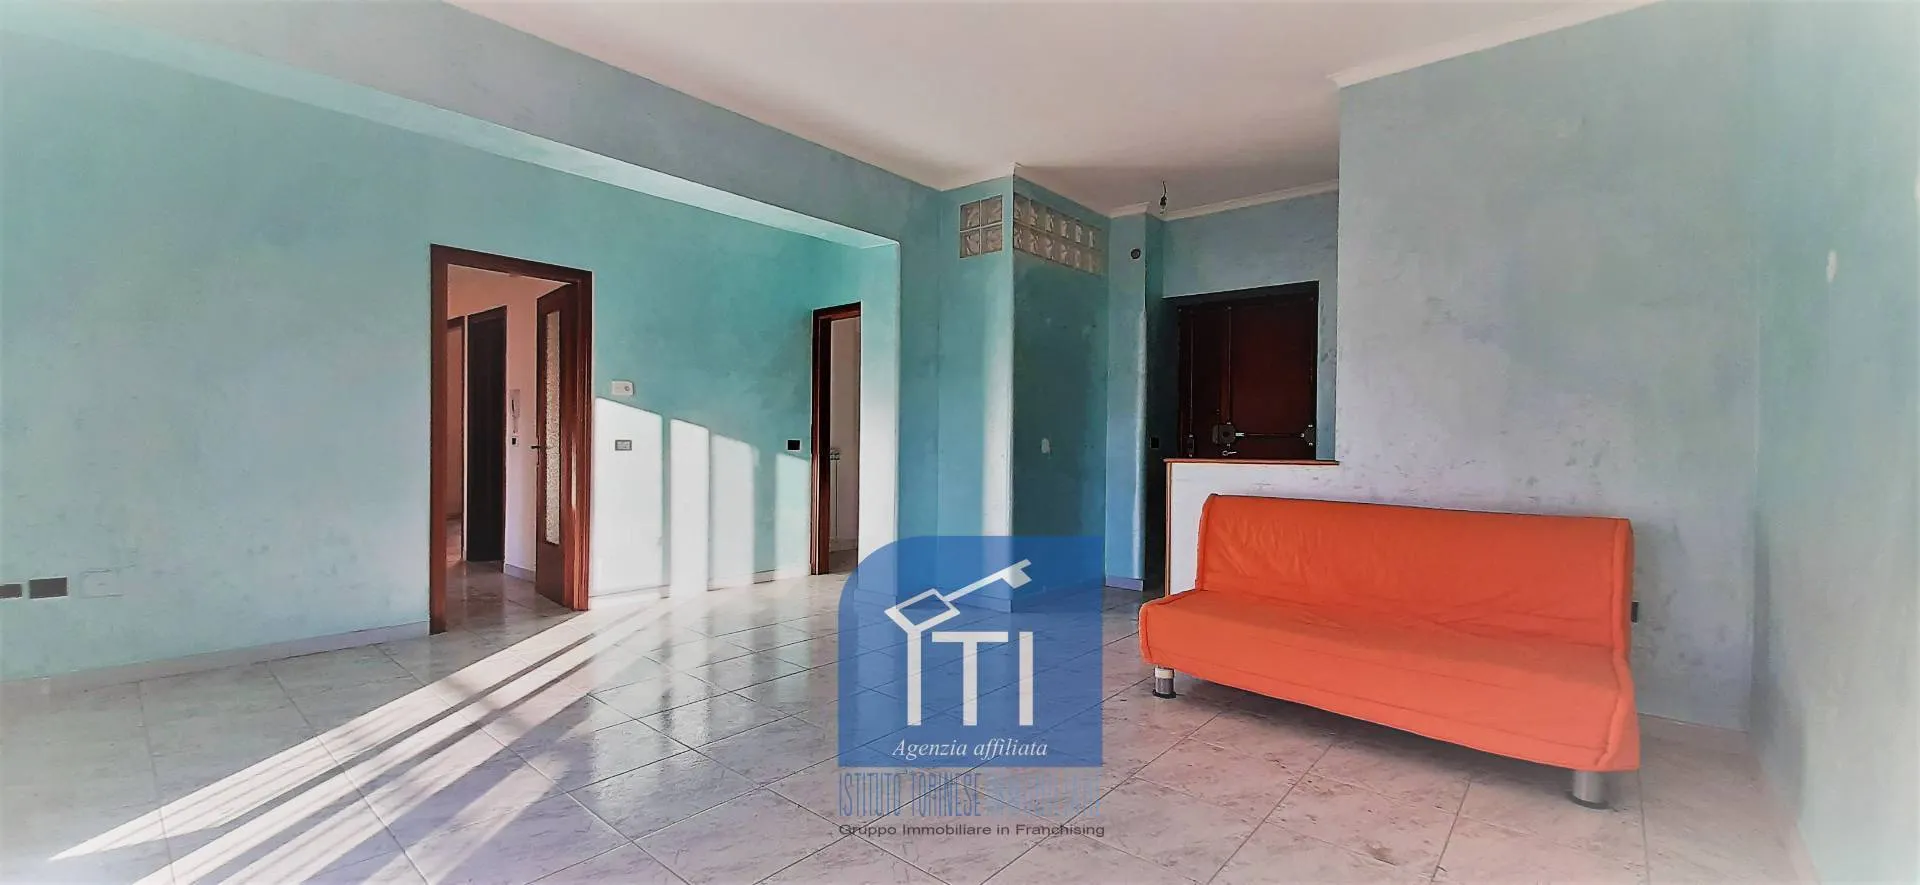 Immagine per Appartamento in vendita a Sant'Elia Fiumerapido VIA NUOVA CARTIERA